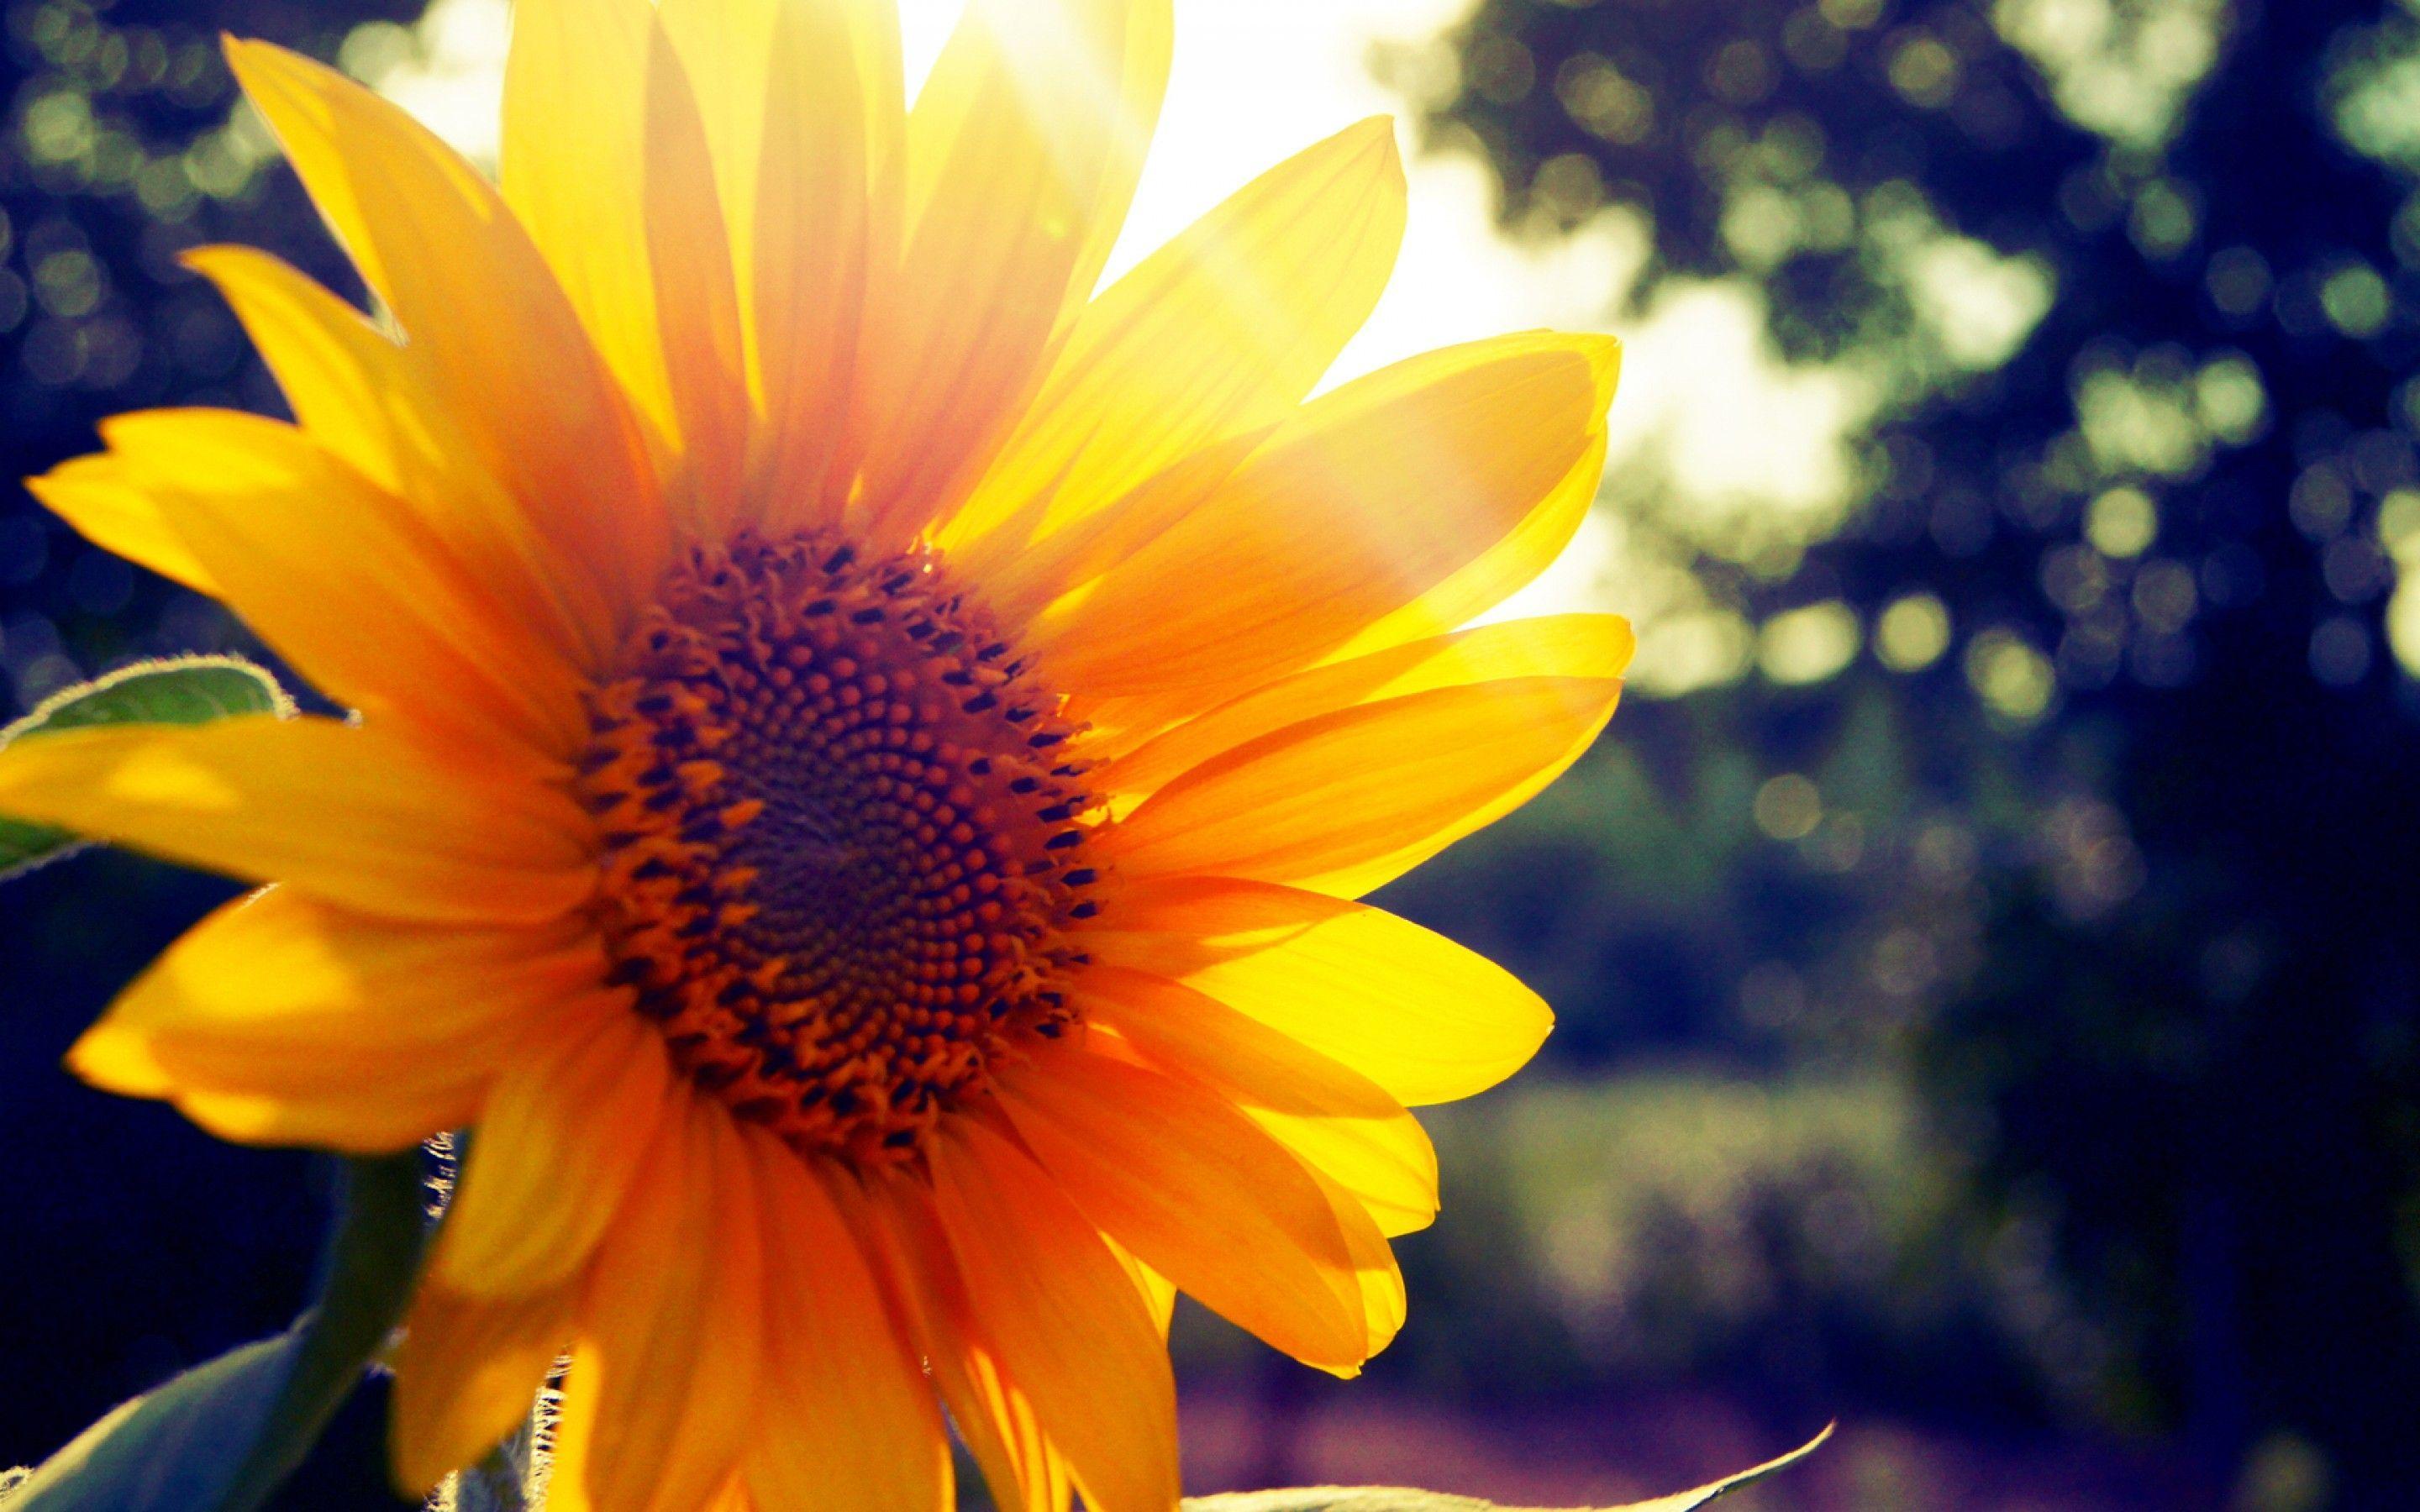 Sunflower Desktop Wallpaper and Artwork. Sunflowers